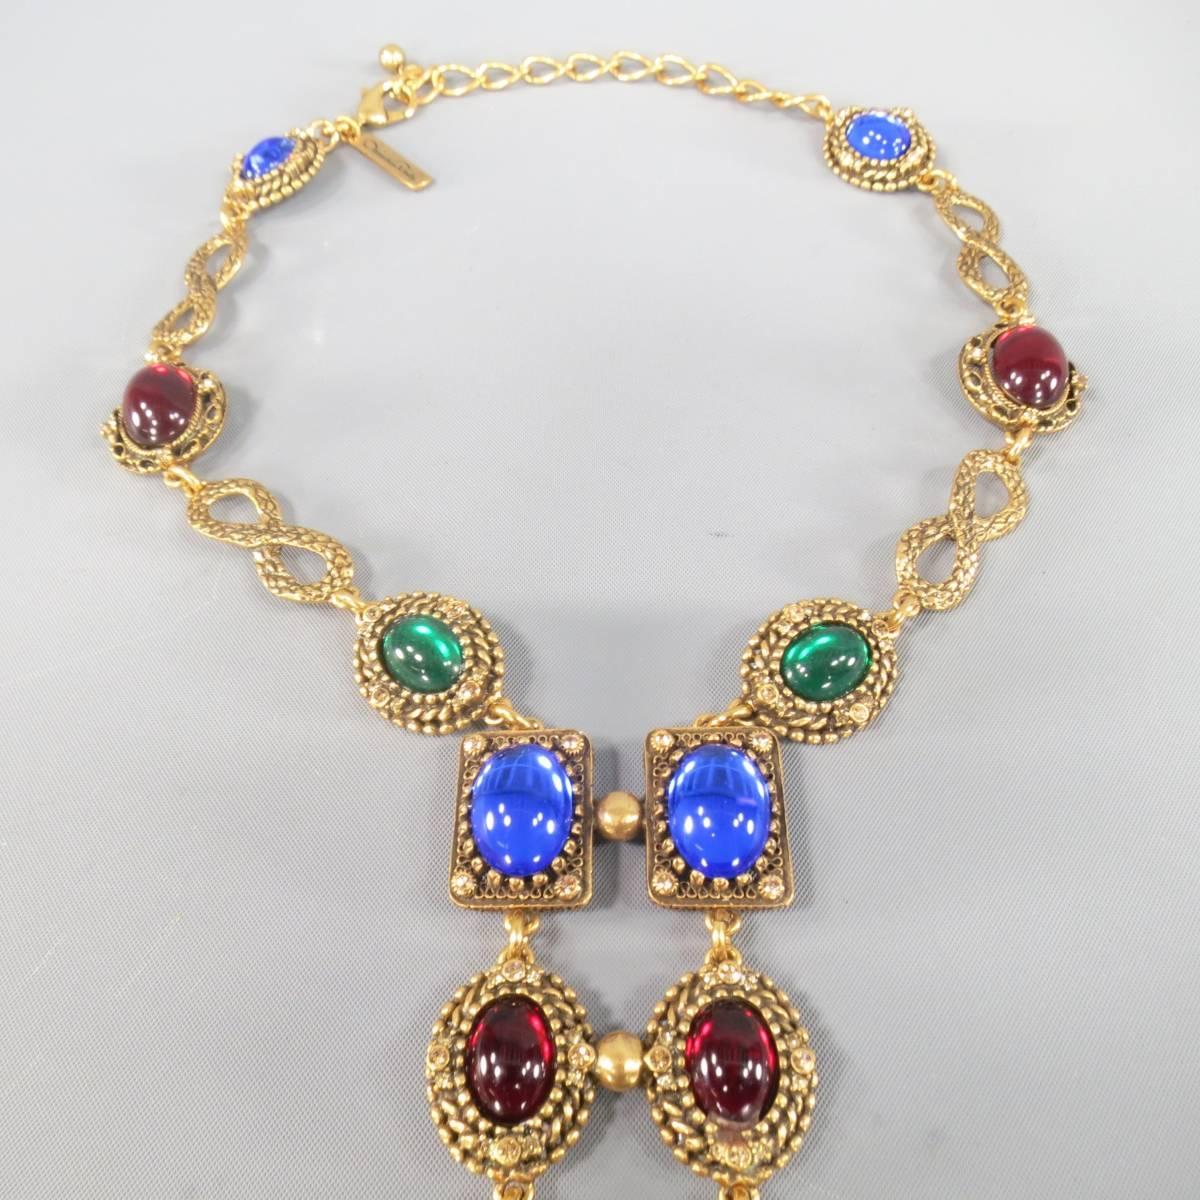 byzantine inspired jewelry